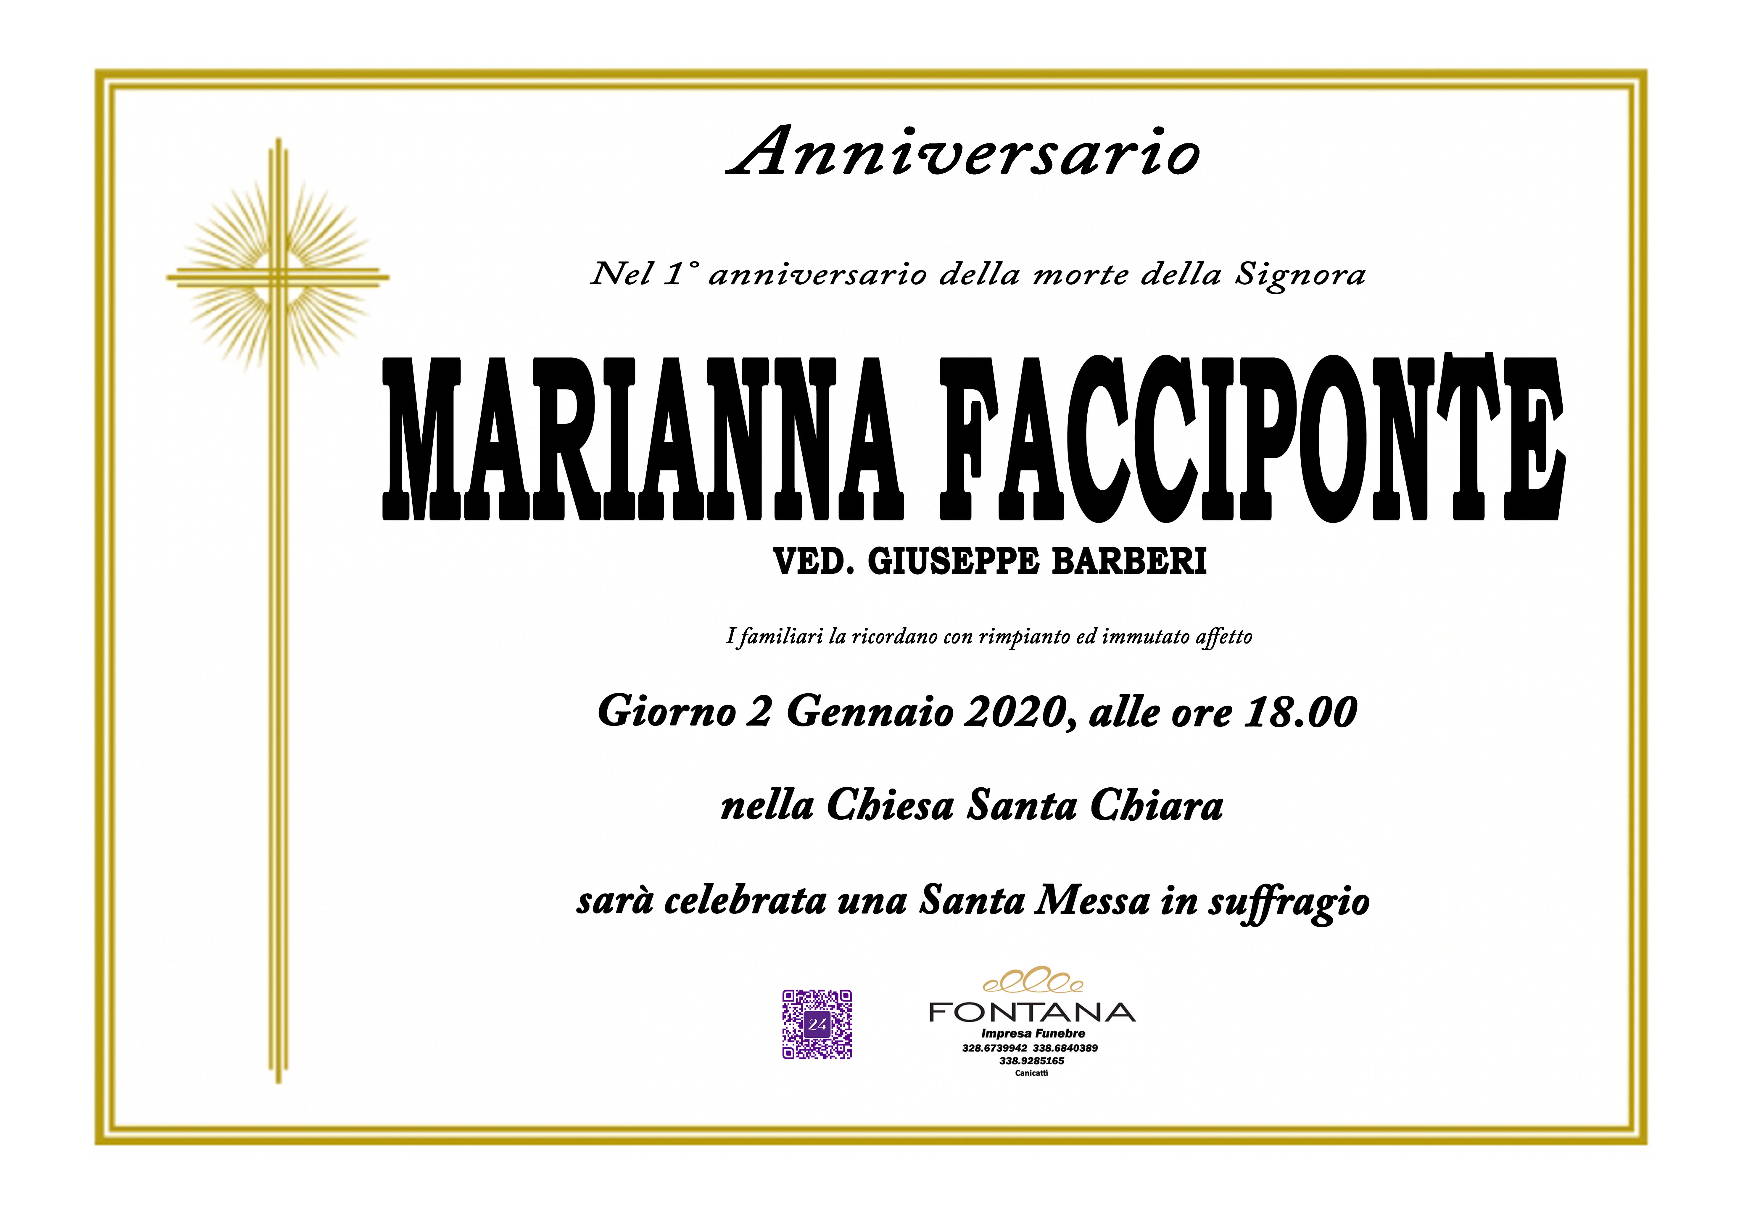 Marianna Facciponte